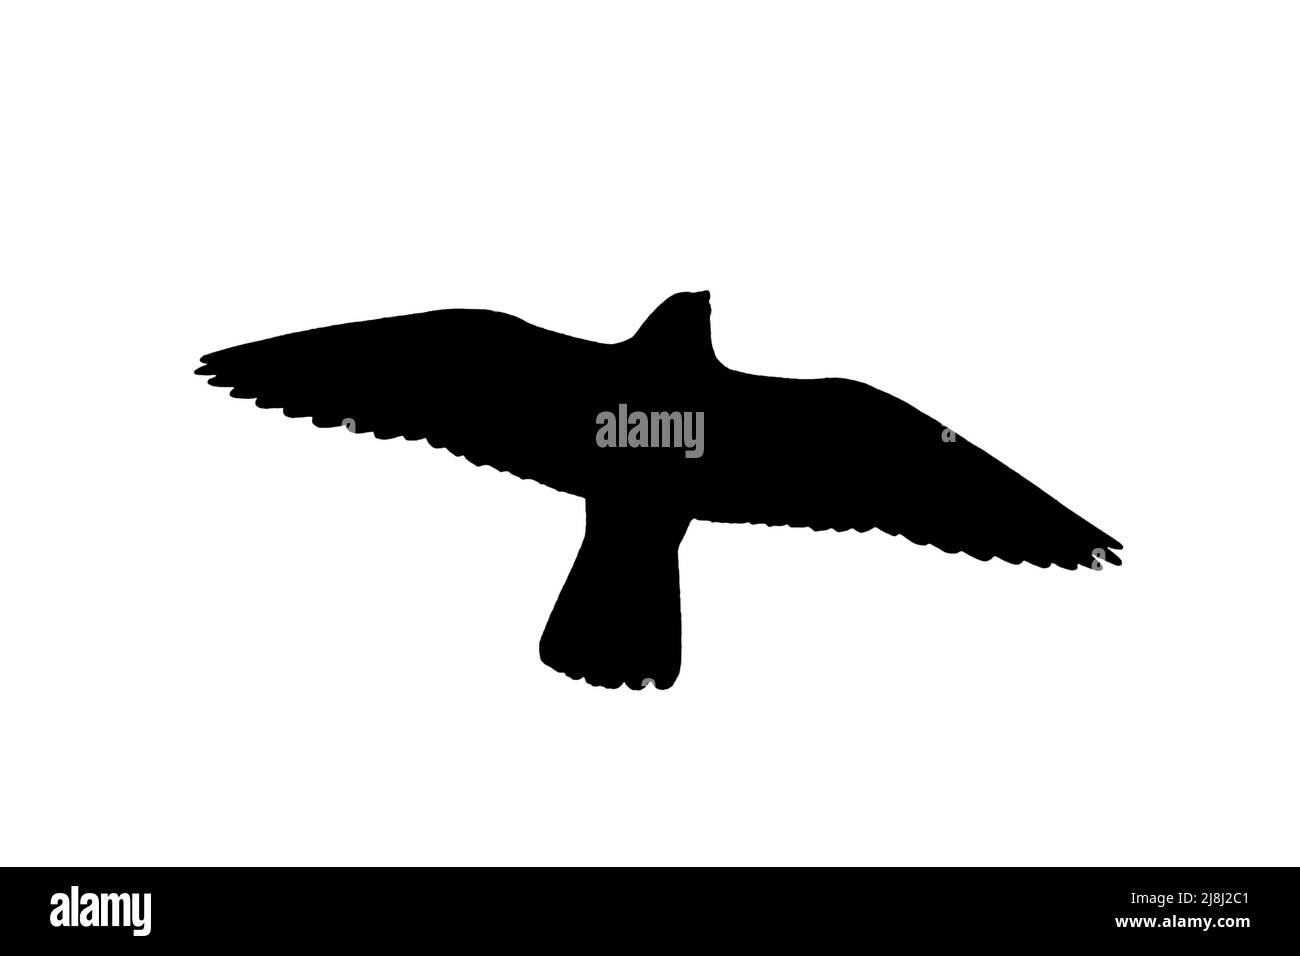 Silhouette eines fliegenden Wanderfalkens (Falco peregrinus), der vor weißem Hintergrund ausgestanzt ist, um Flügel, Kopf- und Schwanzformen zu zeigen Stockfoto